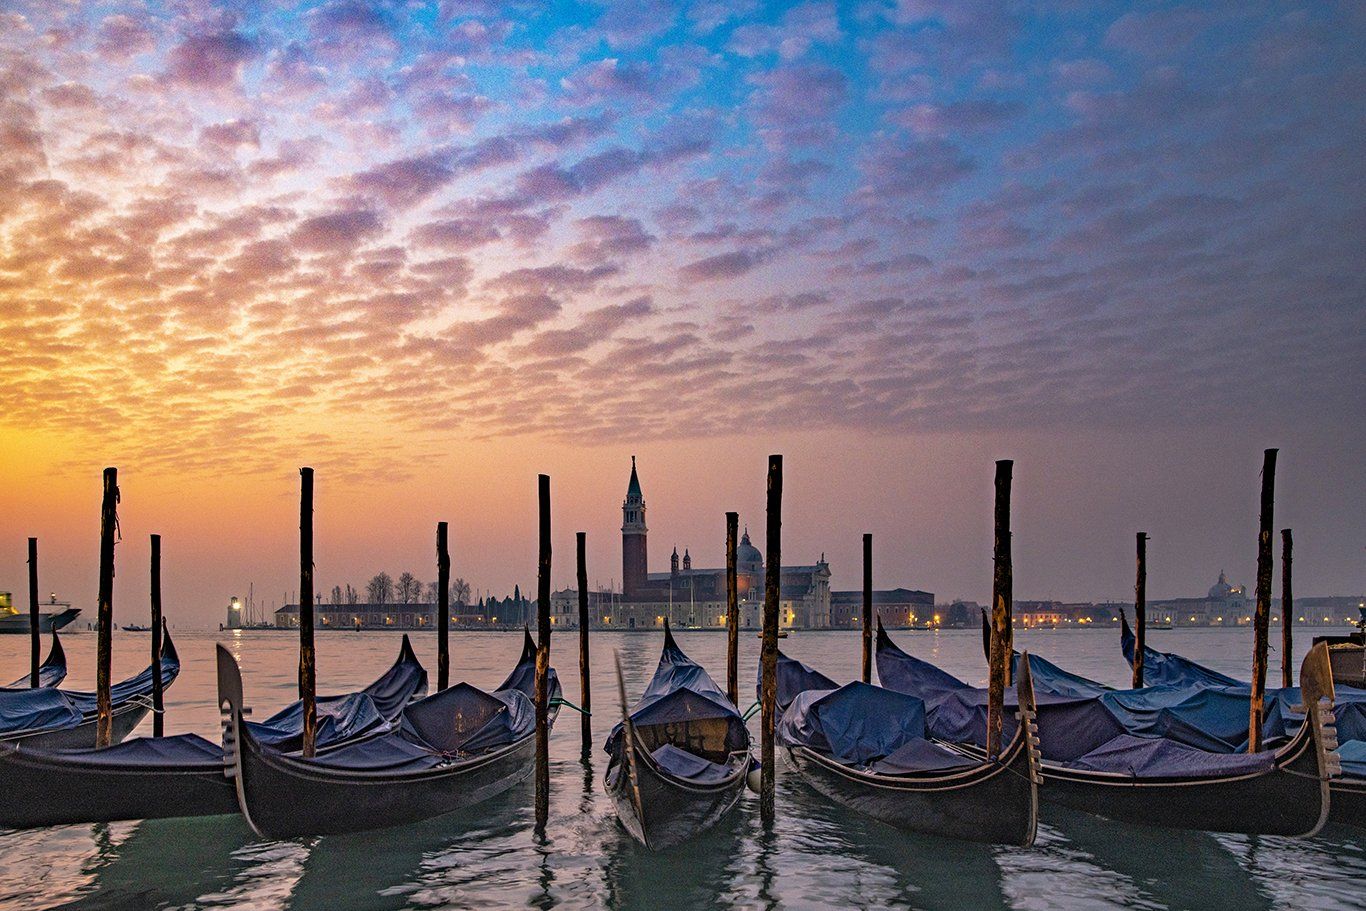 Venice Italy Photo Gallery by David Ferguson